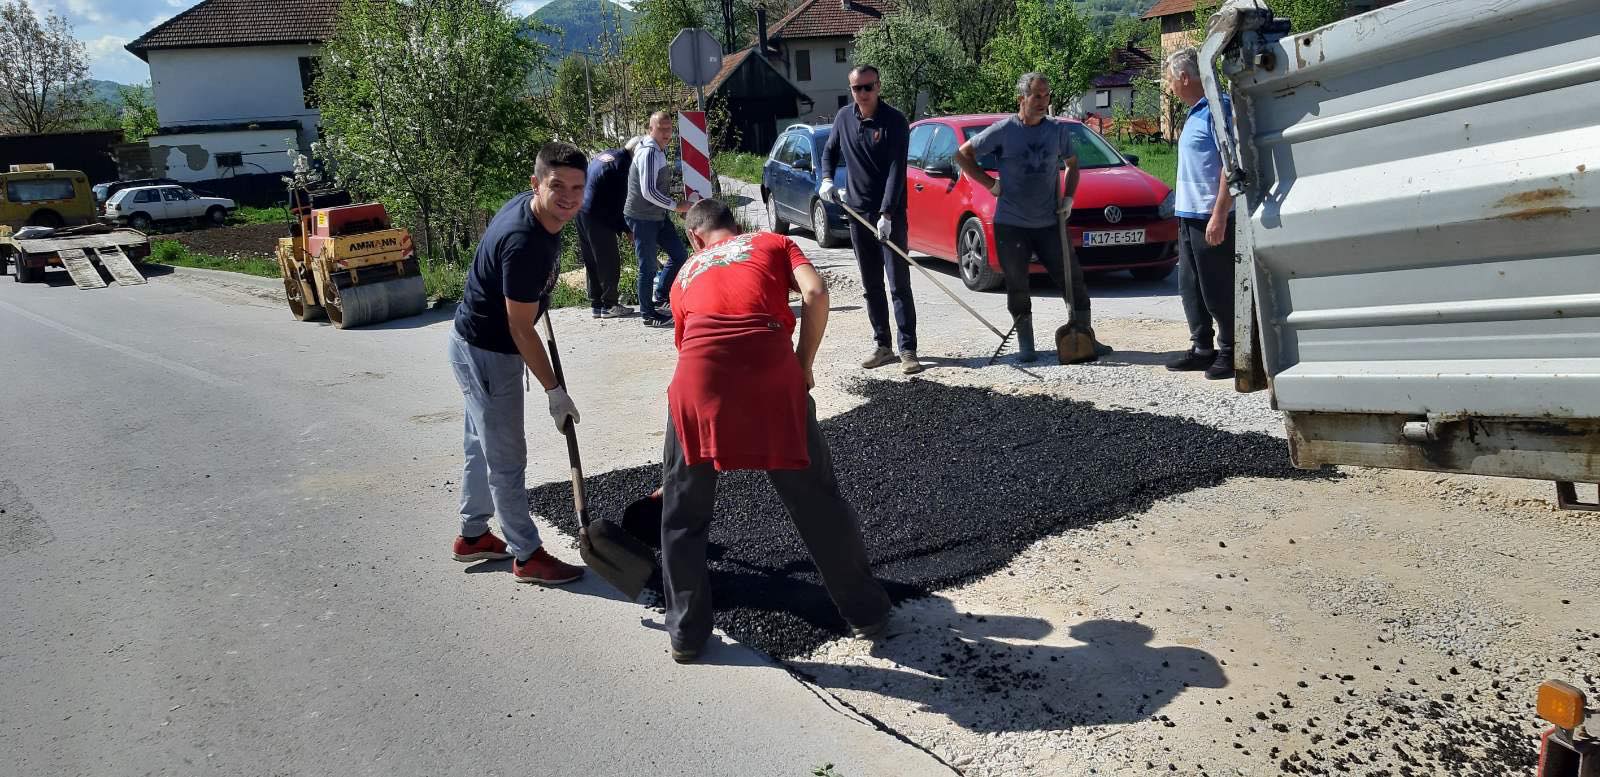 (FOTO) Mještani Mulića skupili novac i sami asfaltirali cestu u svom naselju: Dok dočekaš vlast i tendere, uradi sam